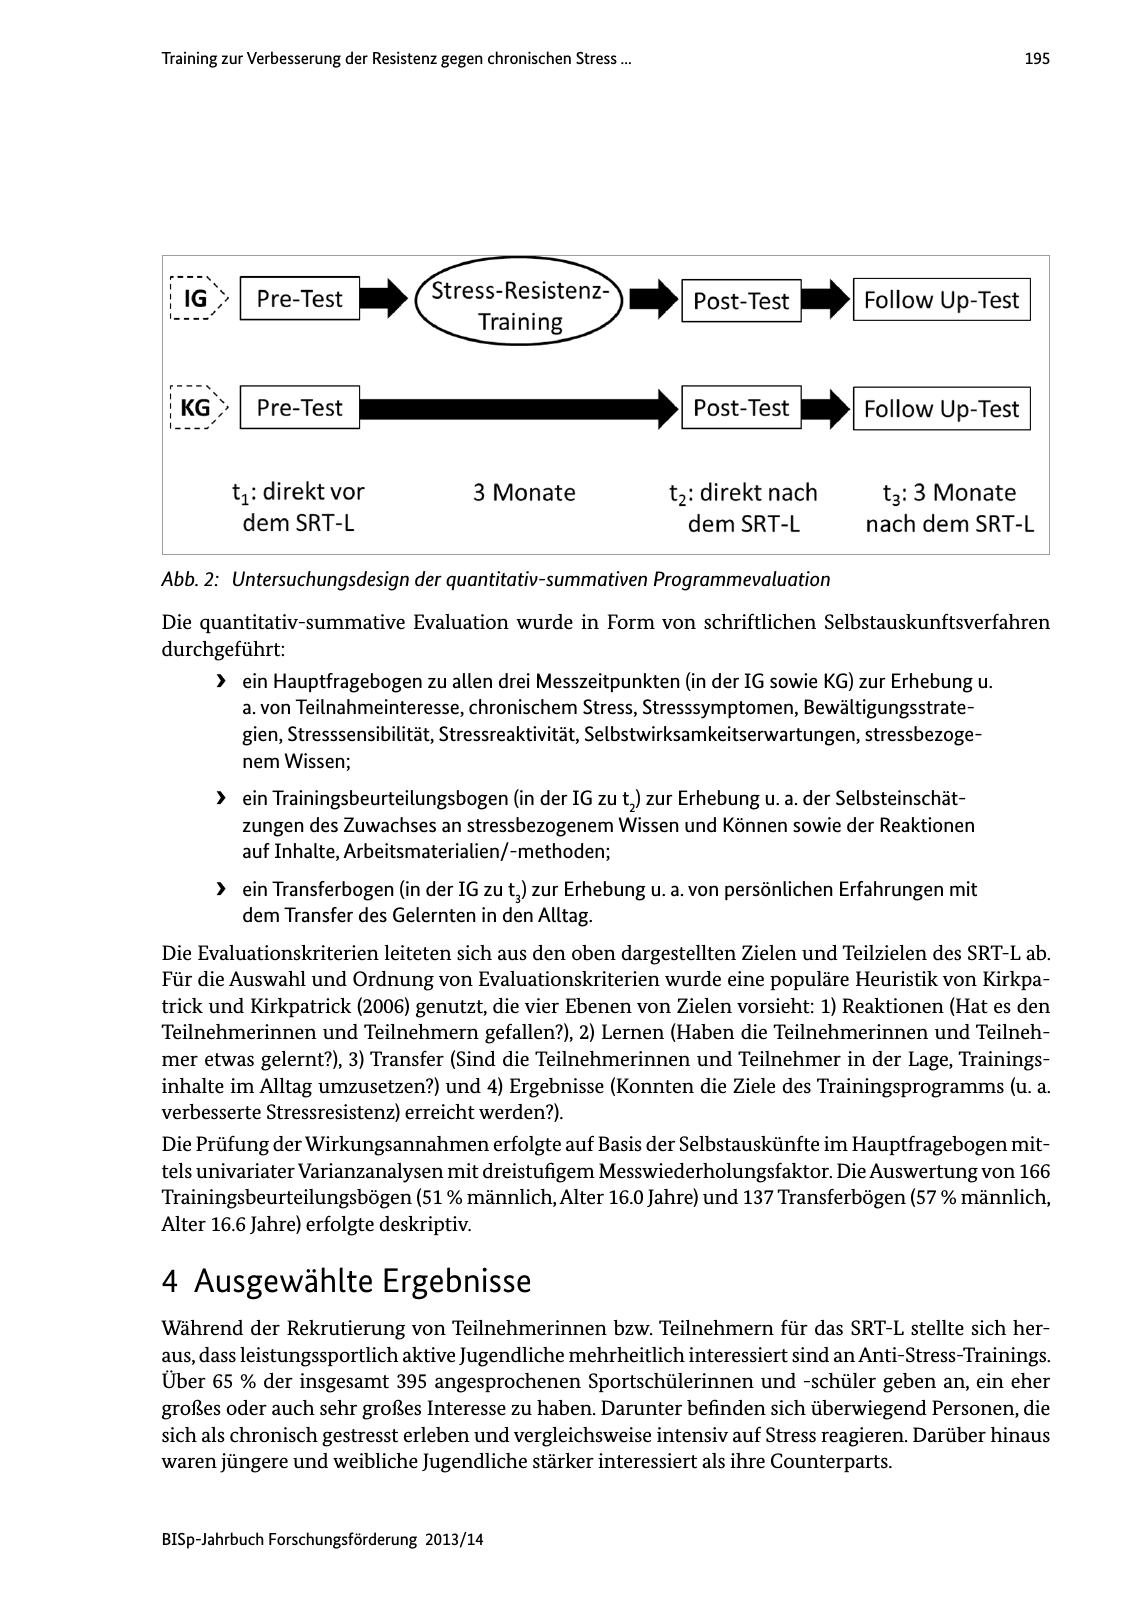 Vorschau BISp-Jahrbuch Forschungsförderung 2013/14 Seite 196